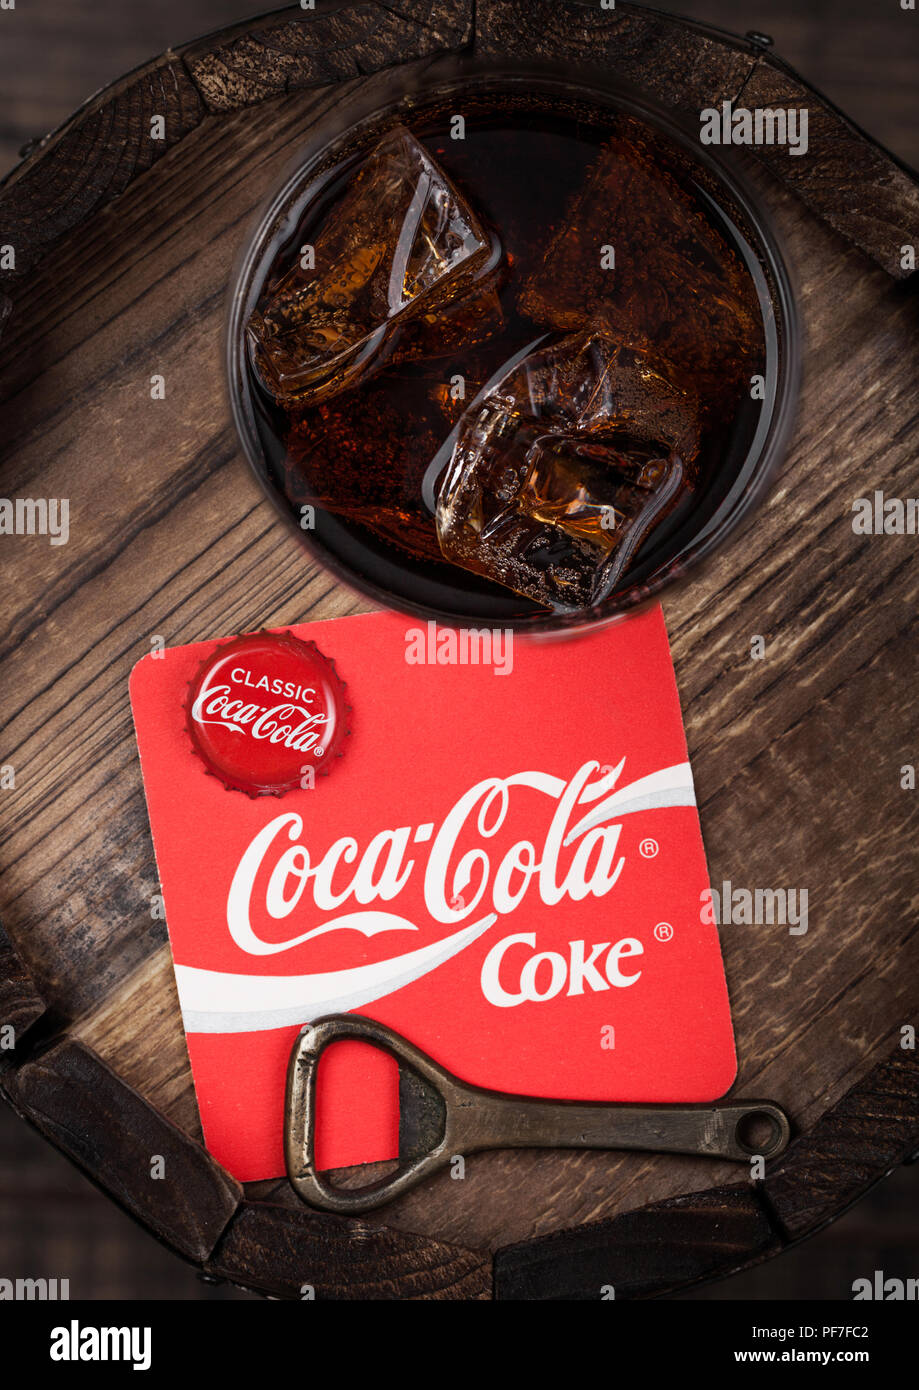 Londres, Reino Unido - Agosto 10, 2018: Posavasos de refrescos Coca Cola original con la parte superior de la y el abresurcos y original de vidrio en la parte superior del